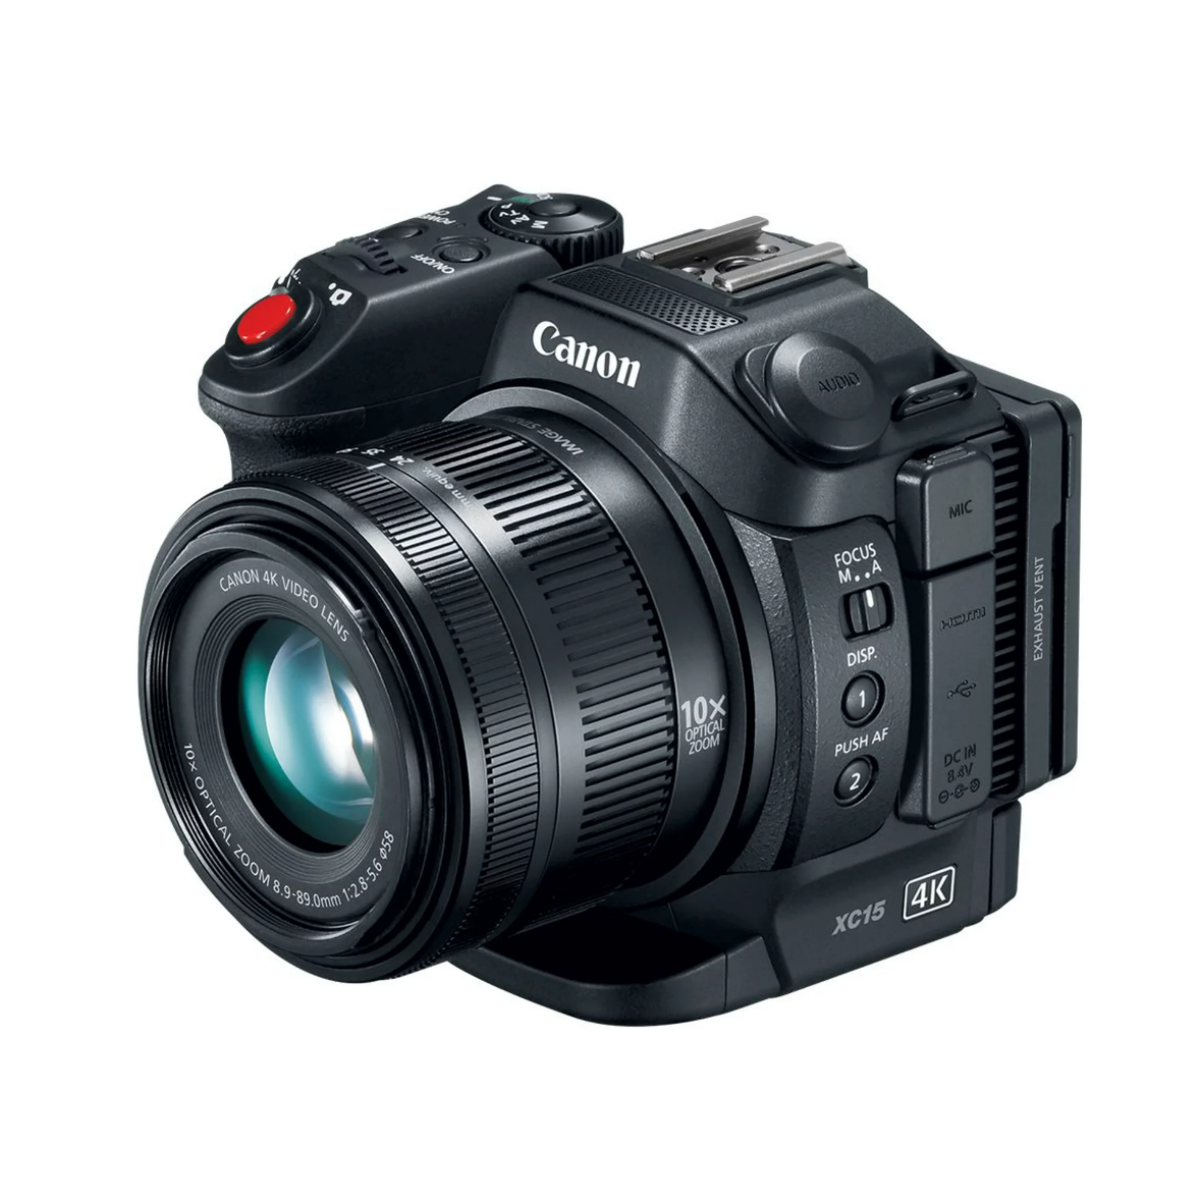 A Canon XC15 camcorder